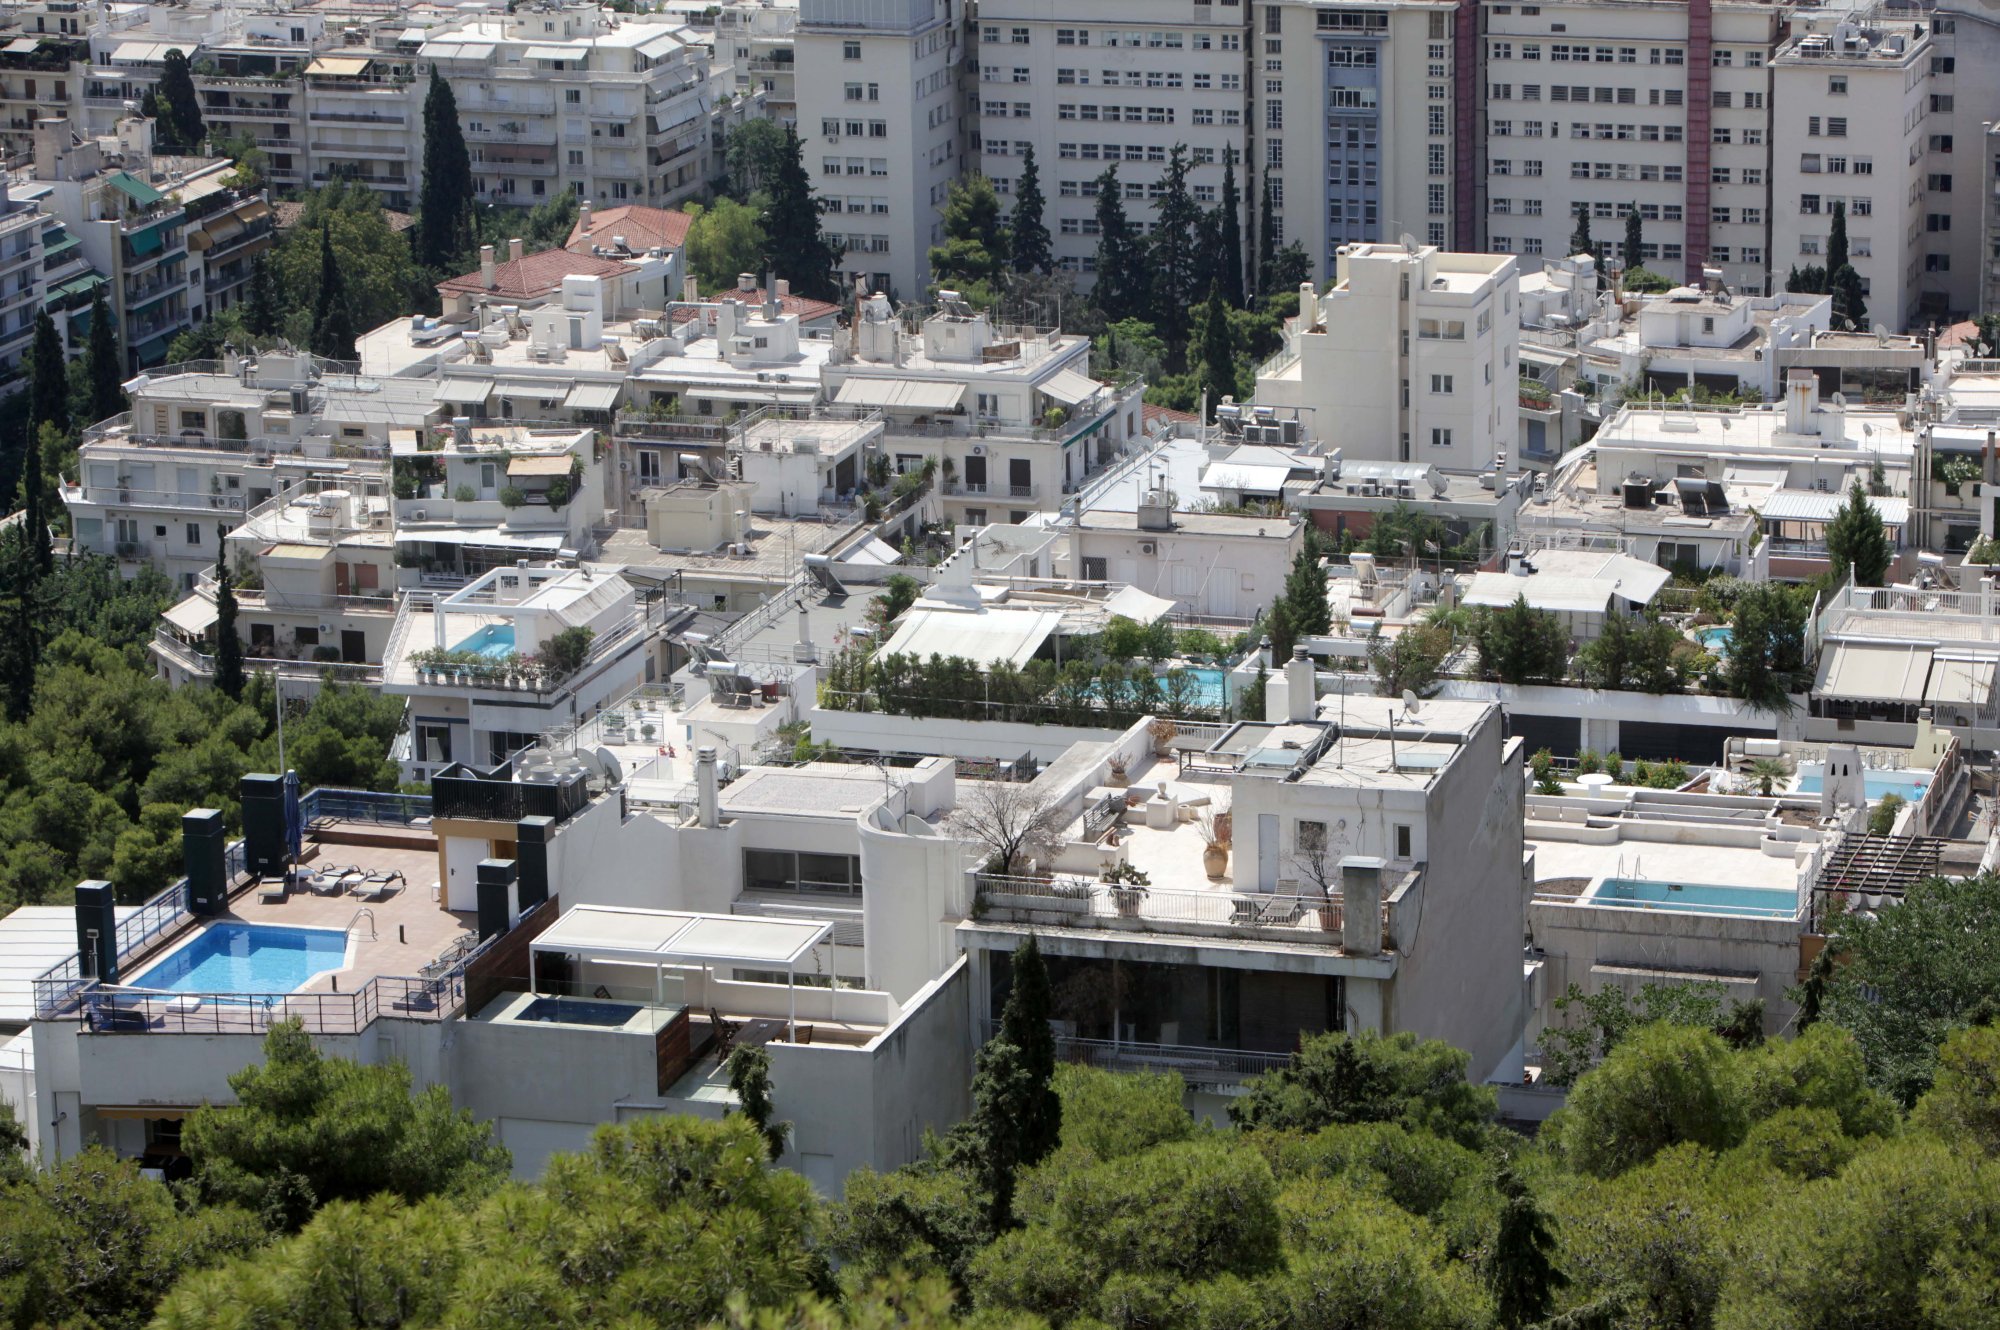 Μπόνους δόμησης: Μπλόκο στην έκδοση νέων οικοδομικών αδειών από το δήμο Αθηναίων